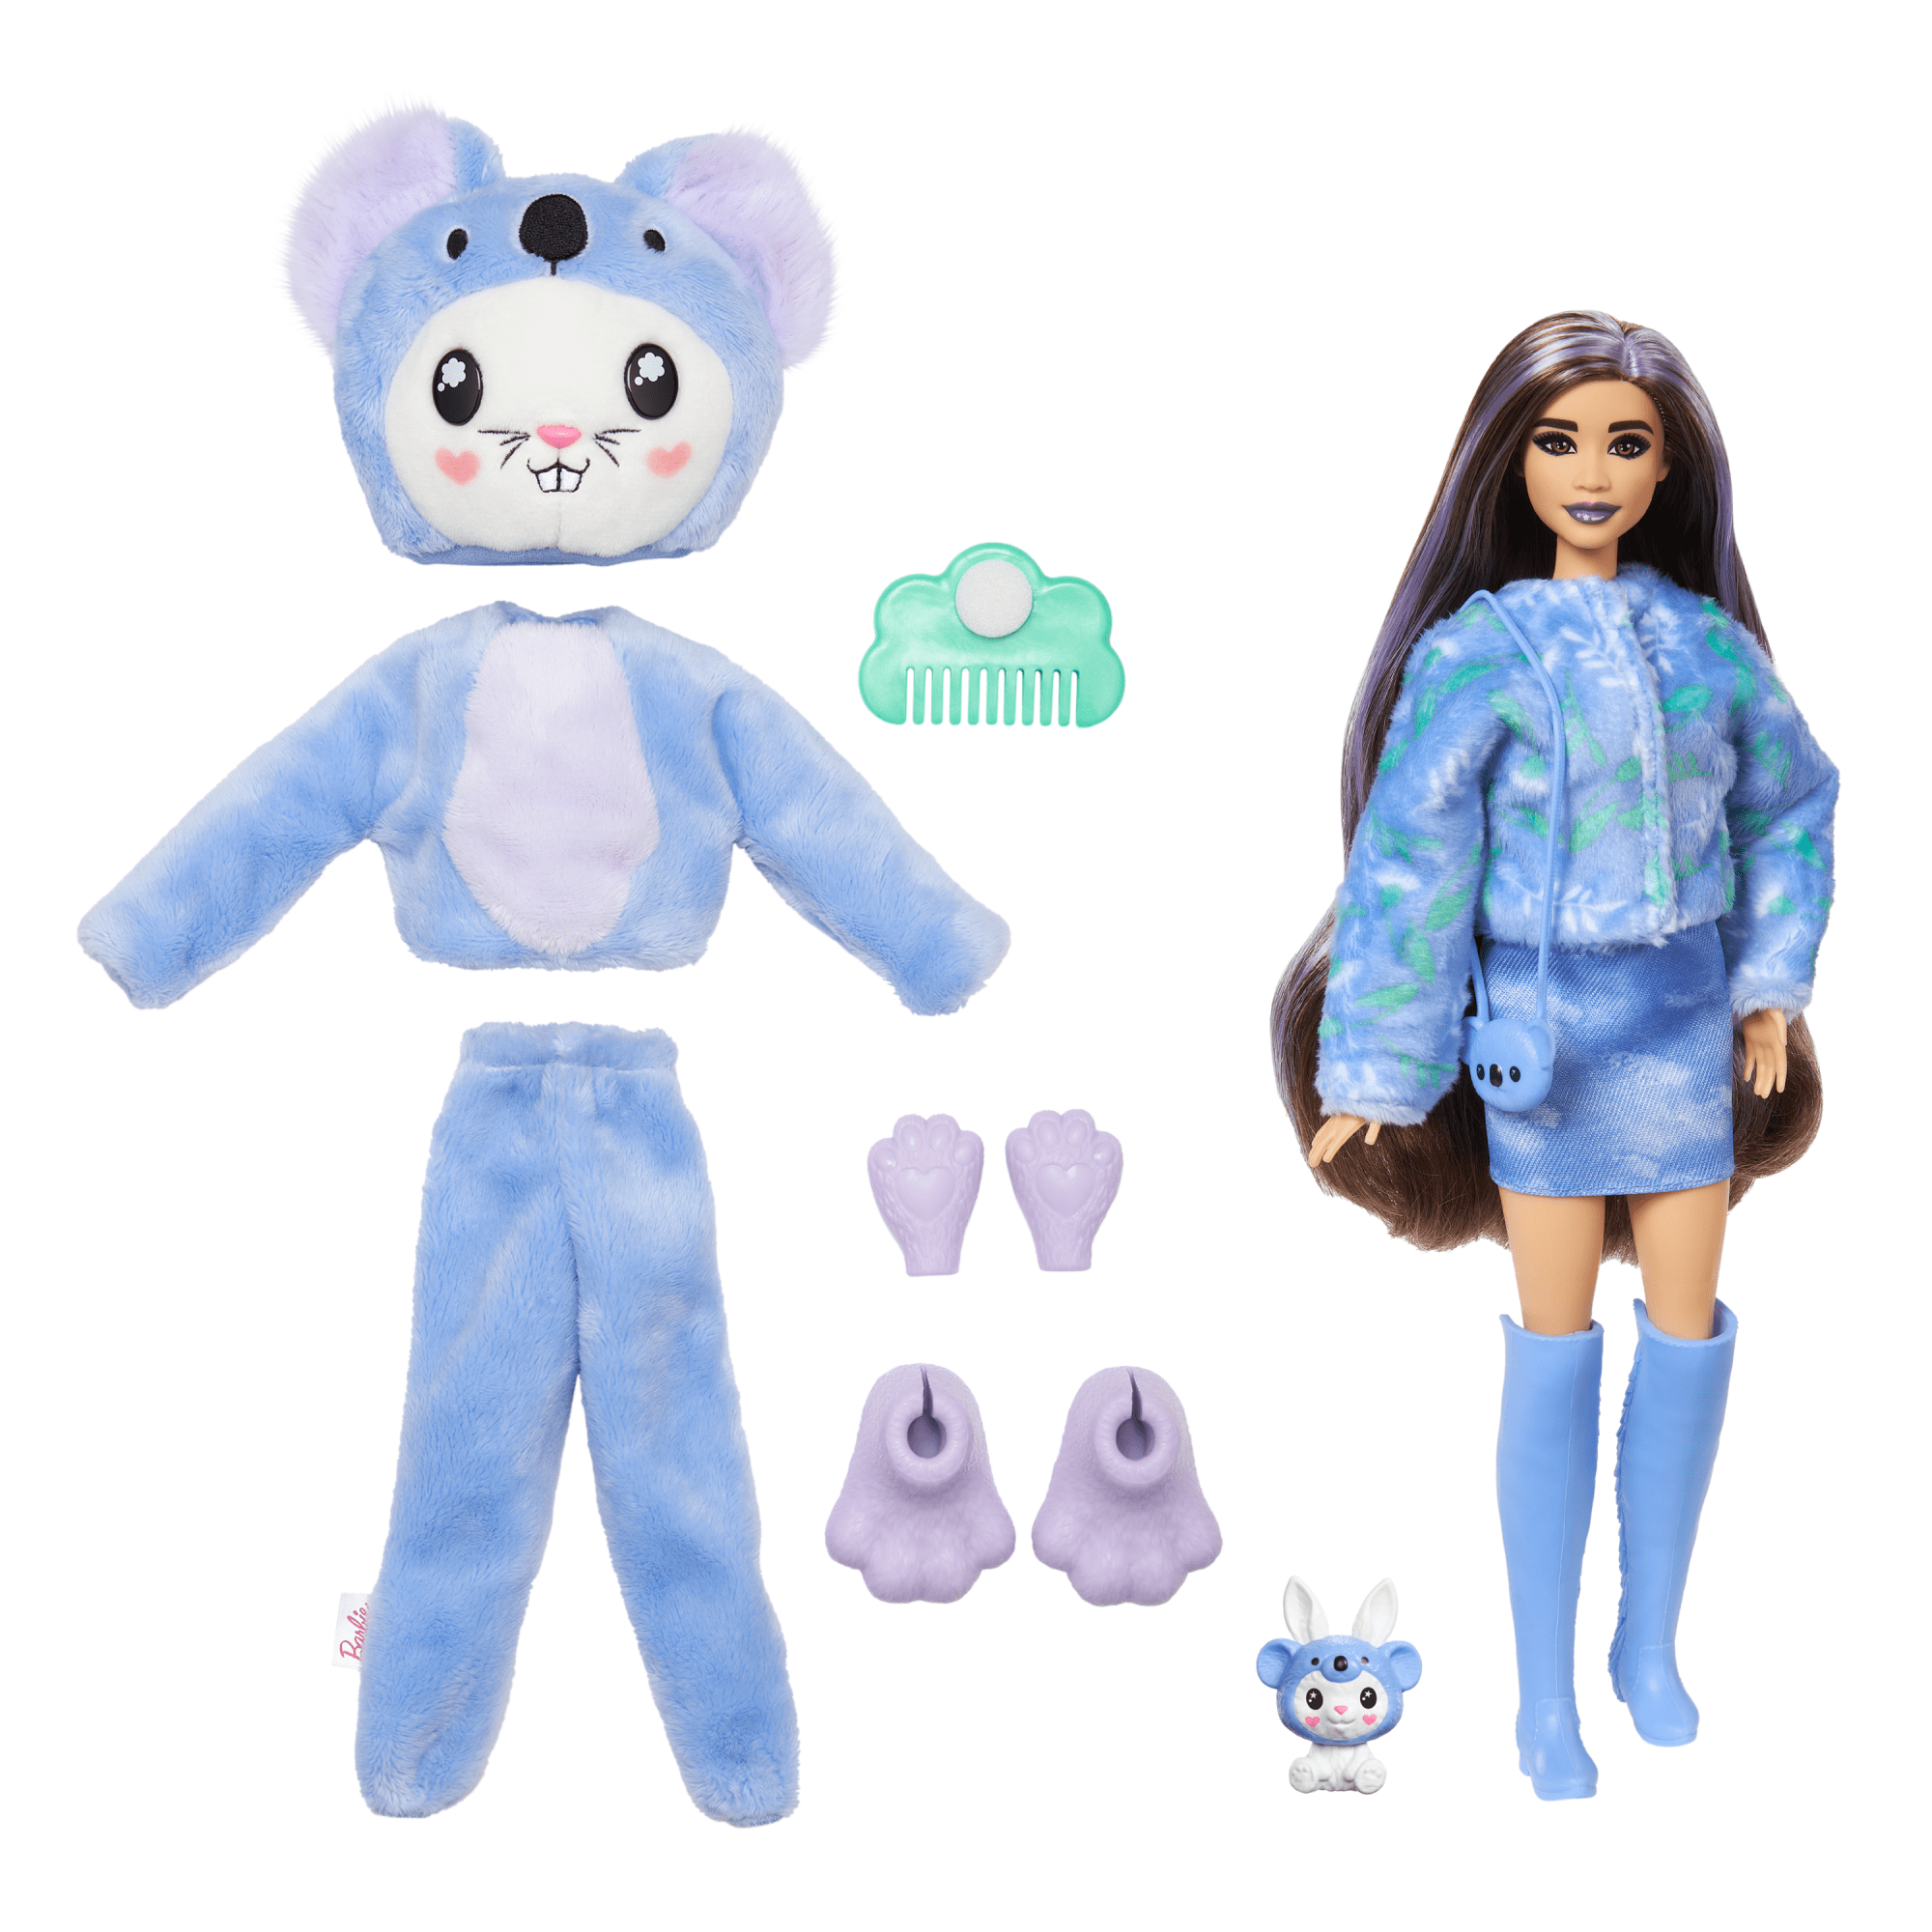 Barbie-Cutie Reveal-Poupée sur le thème des costumes, lapin koala